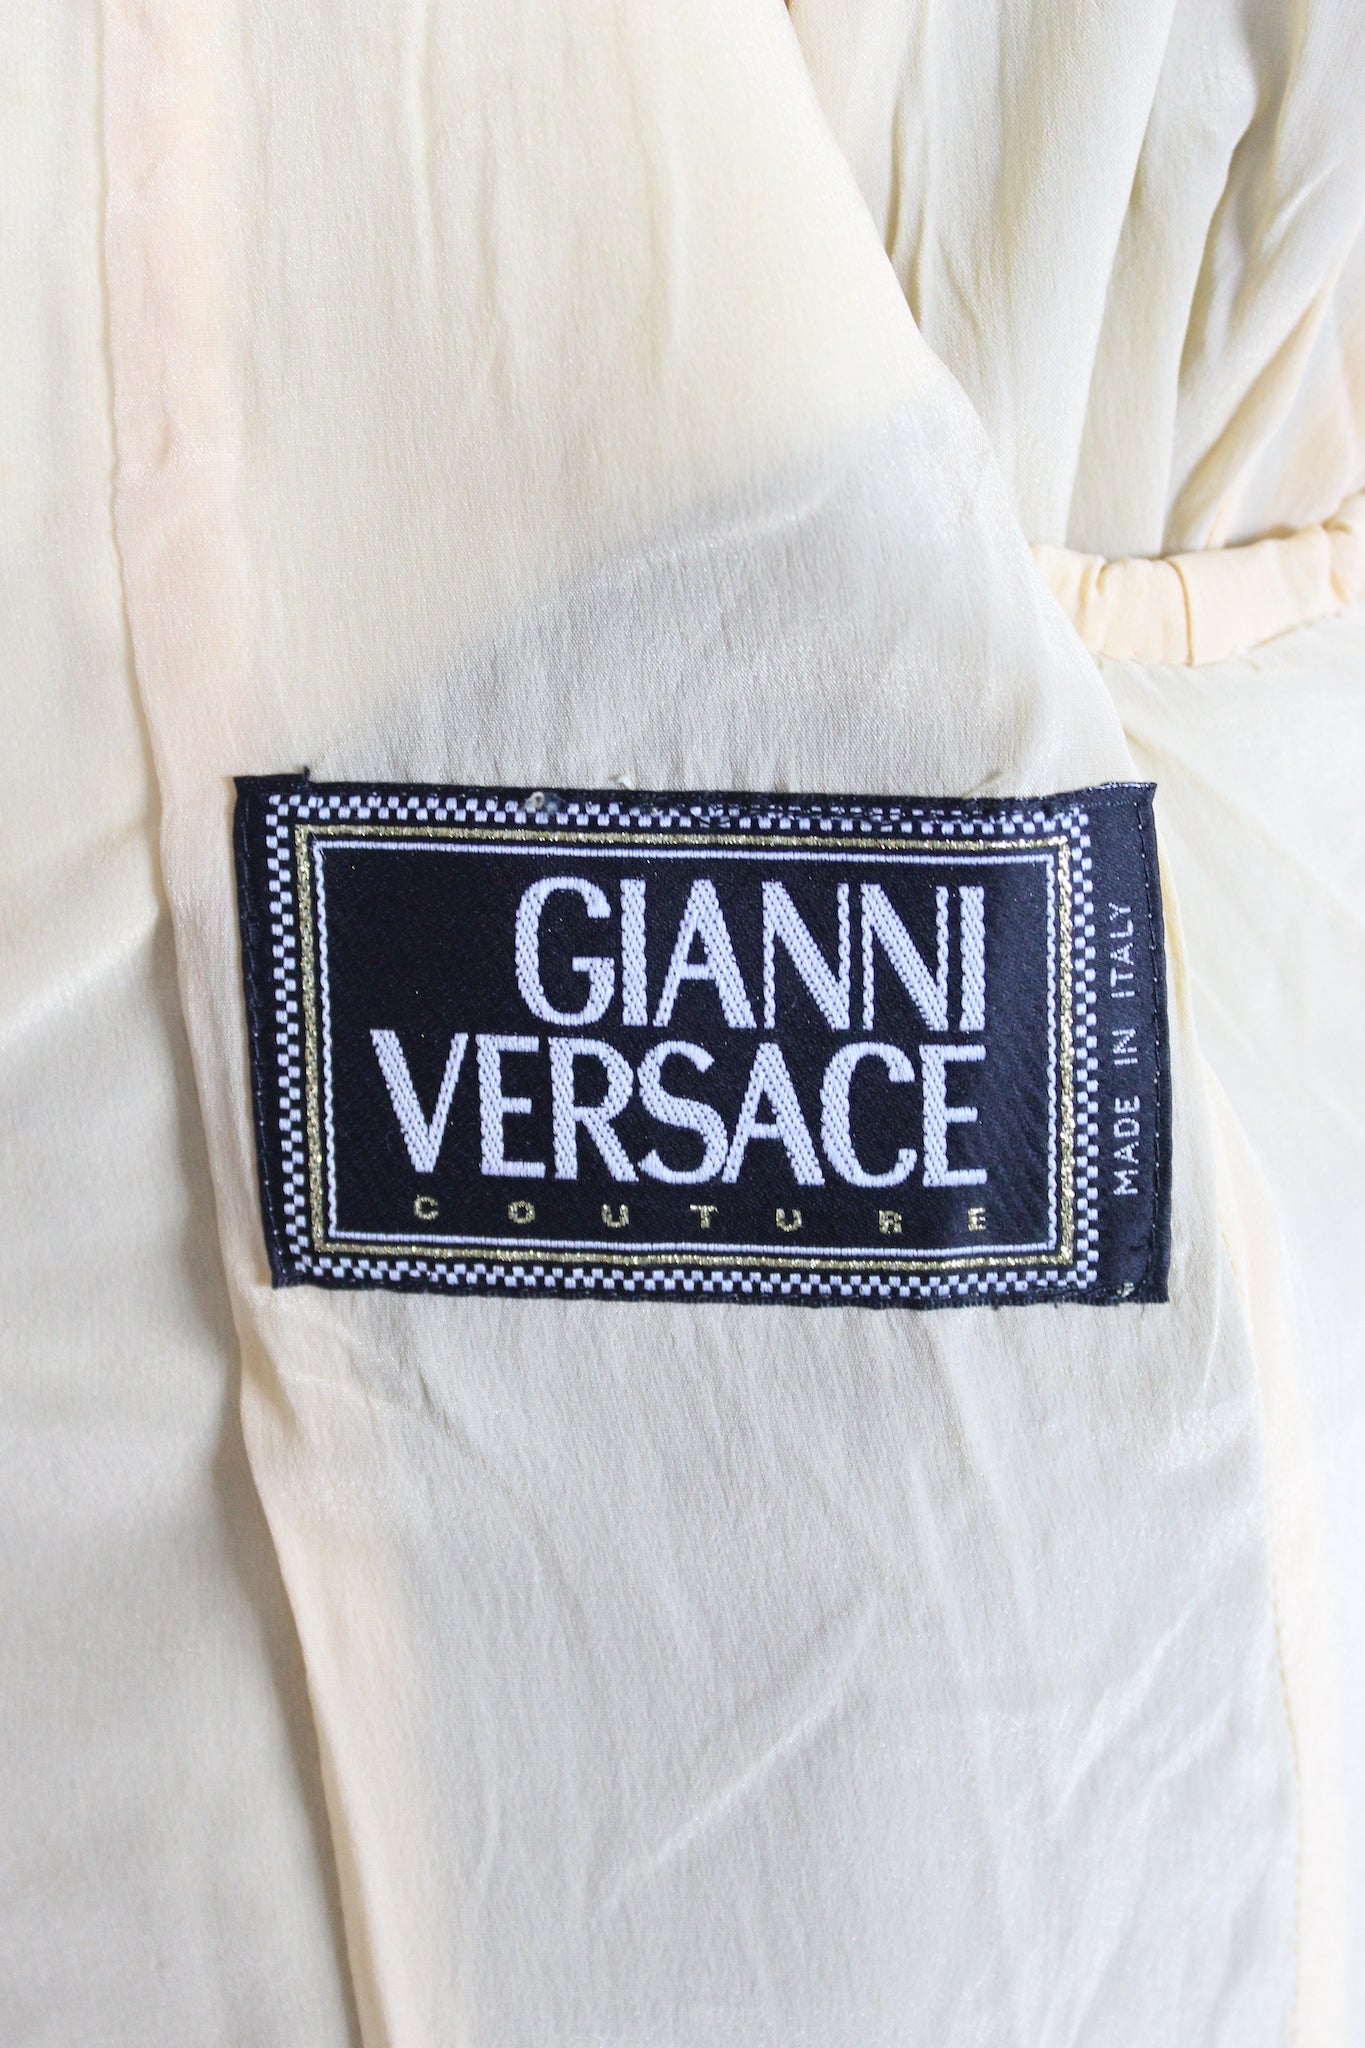 Versace Couture Abito Completo Lana Grigio Lamè Vintage Anni 90